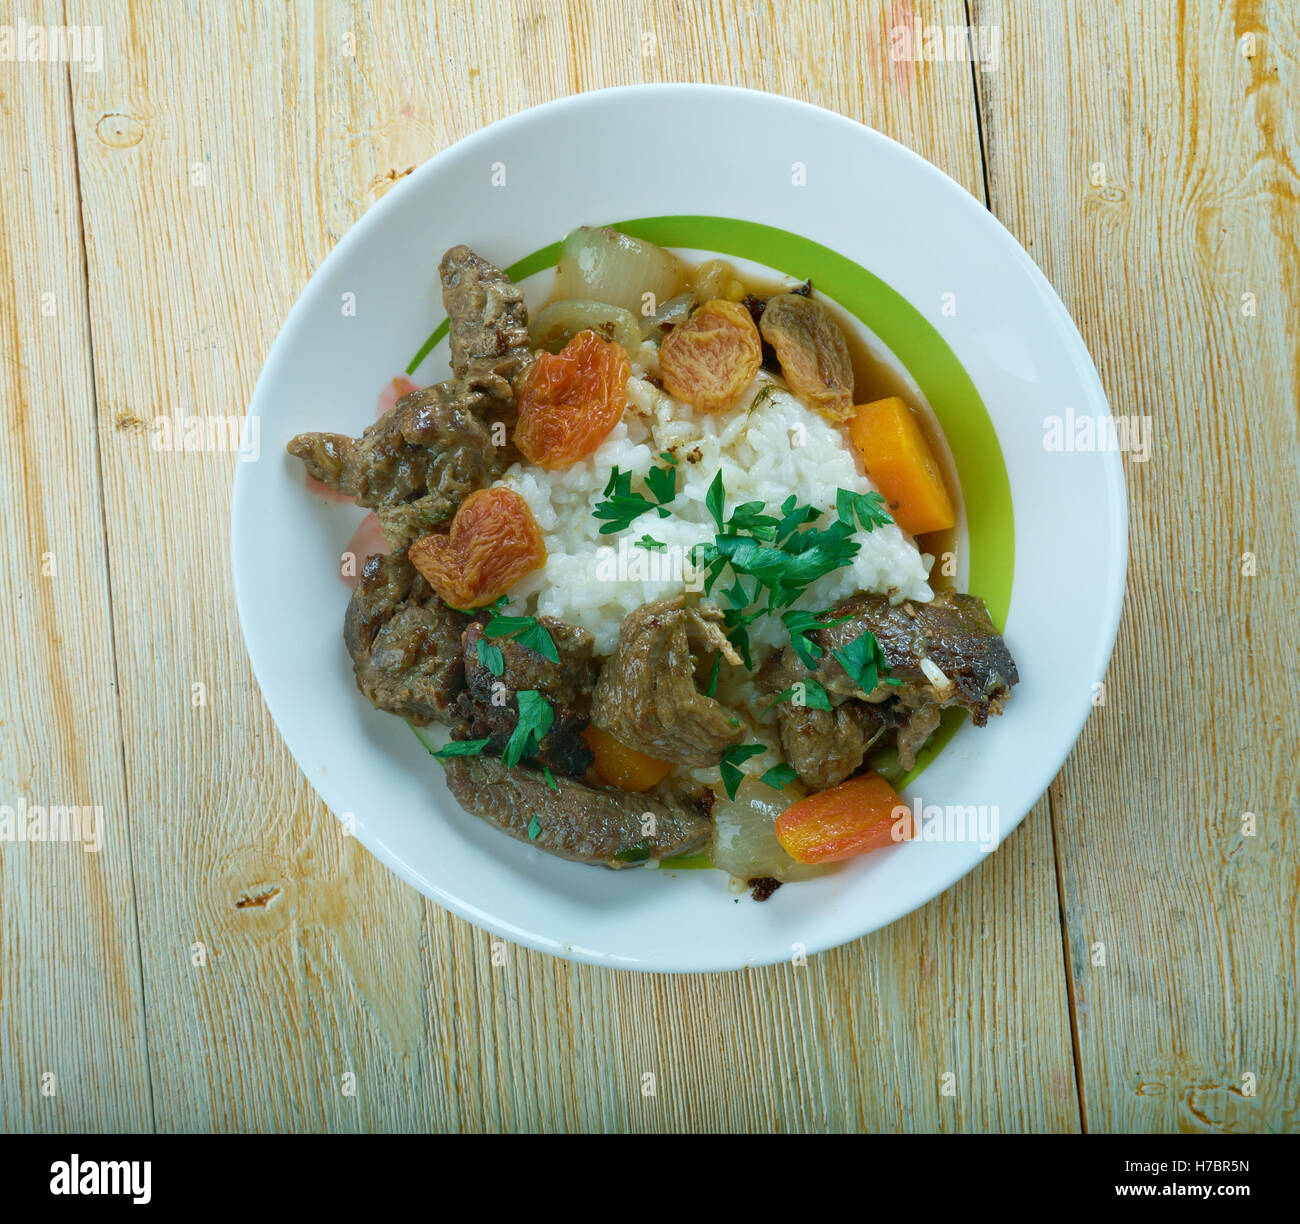 Beesvleisbredie - deutsches Rindfleisch-Eintopf mit Reis Stockfoto